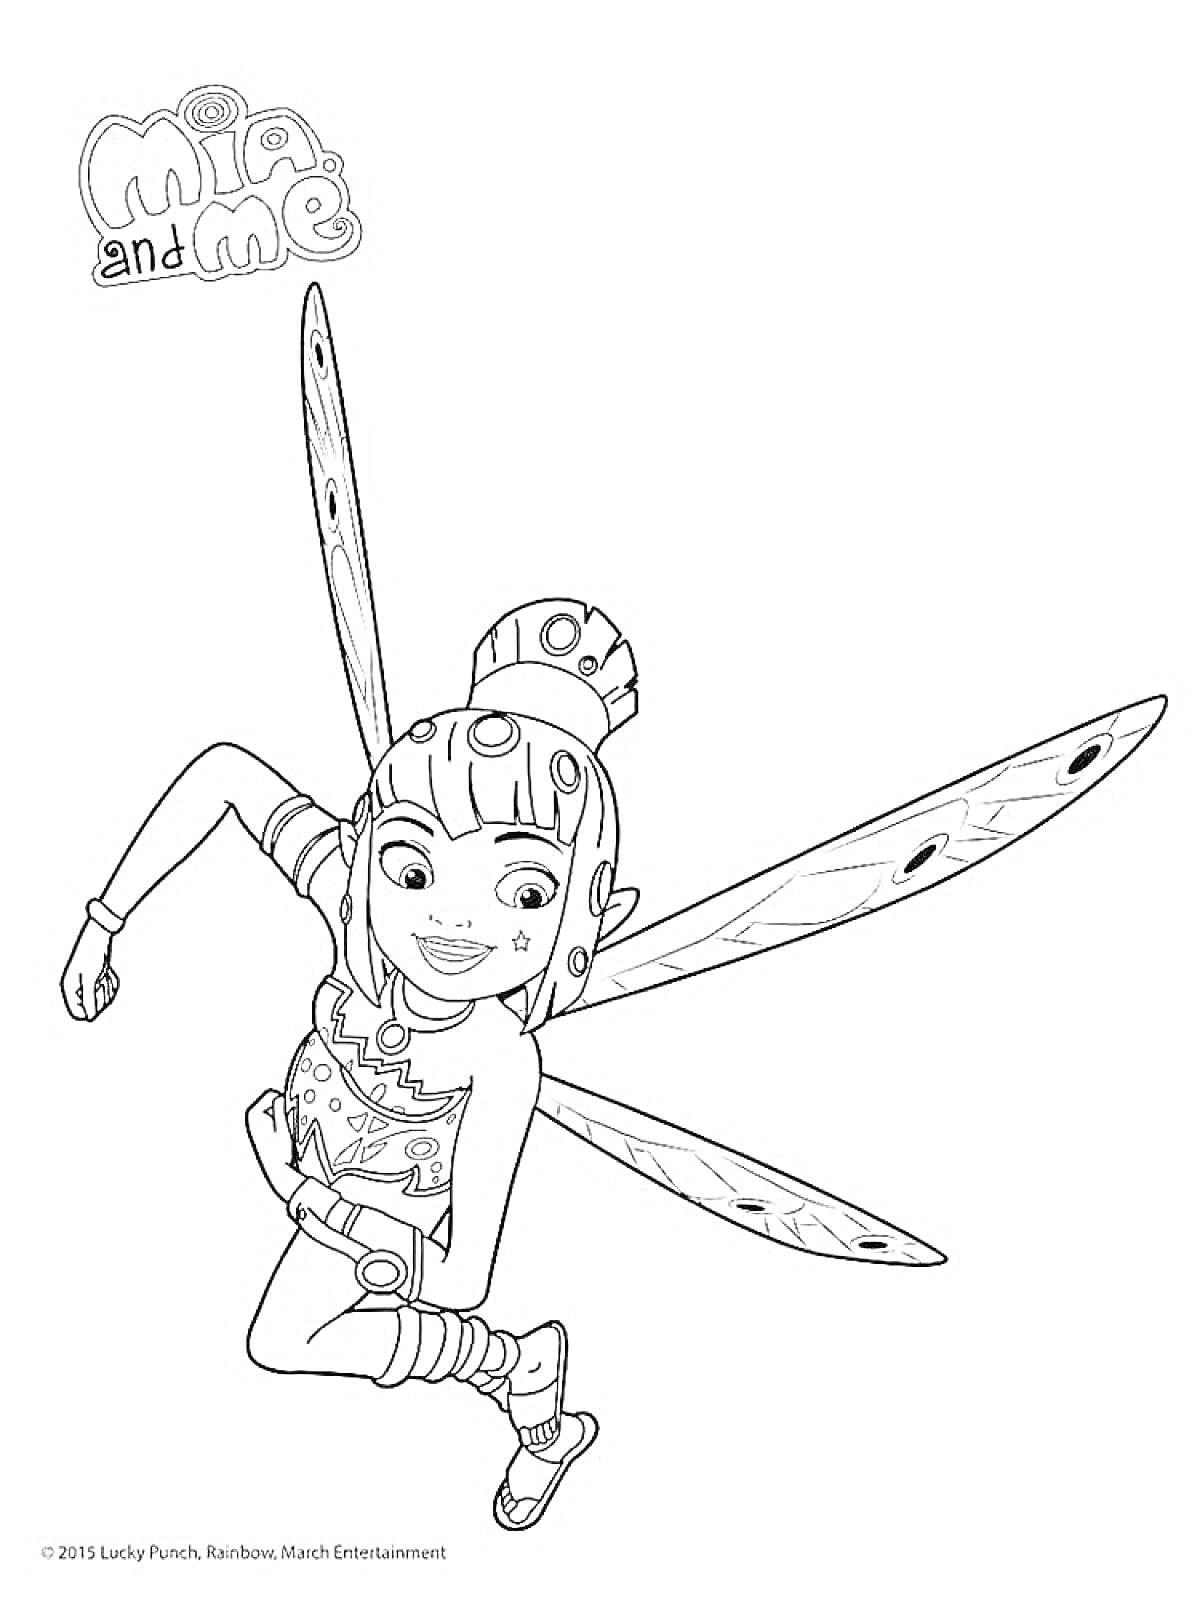 Раскраска девочка-фея в полете с крыльями и узорчатой одеждой под брендом 